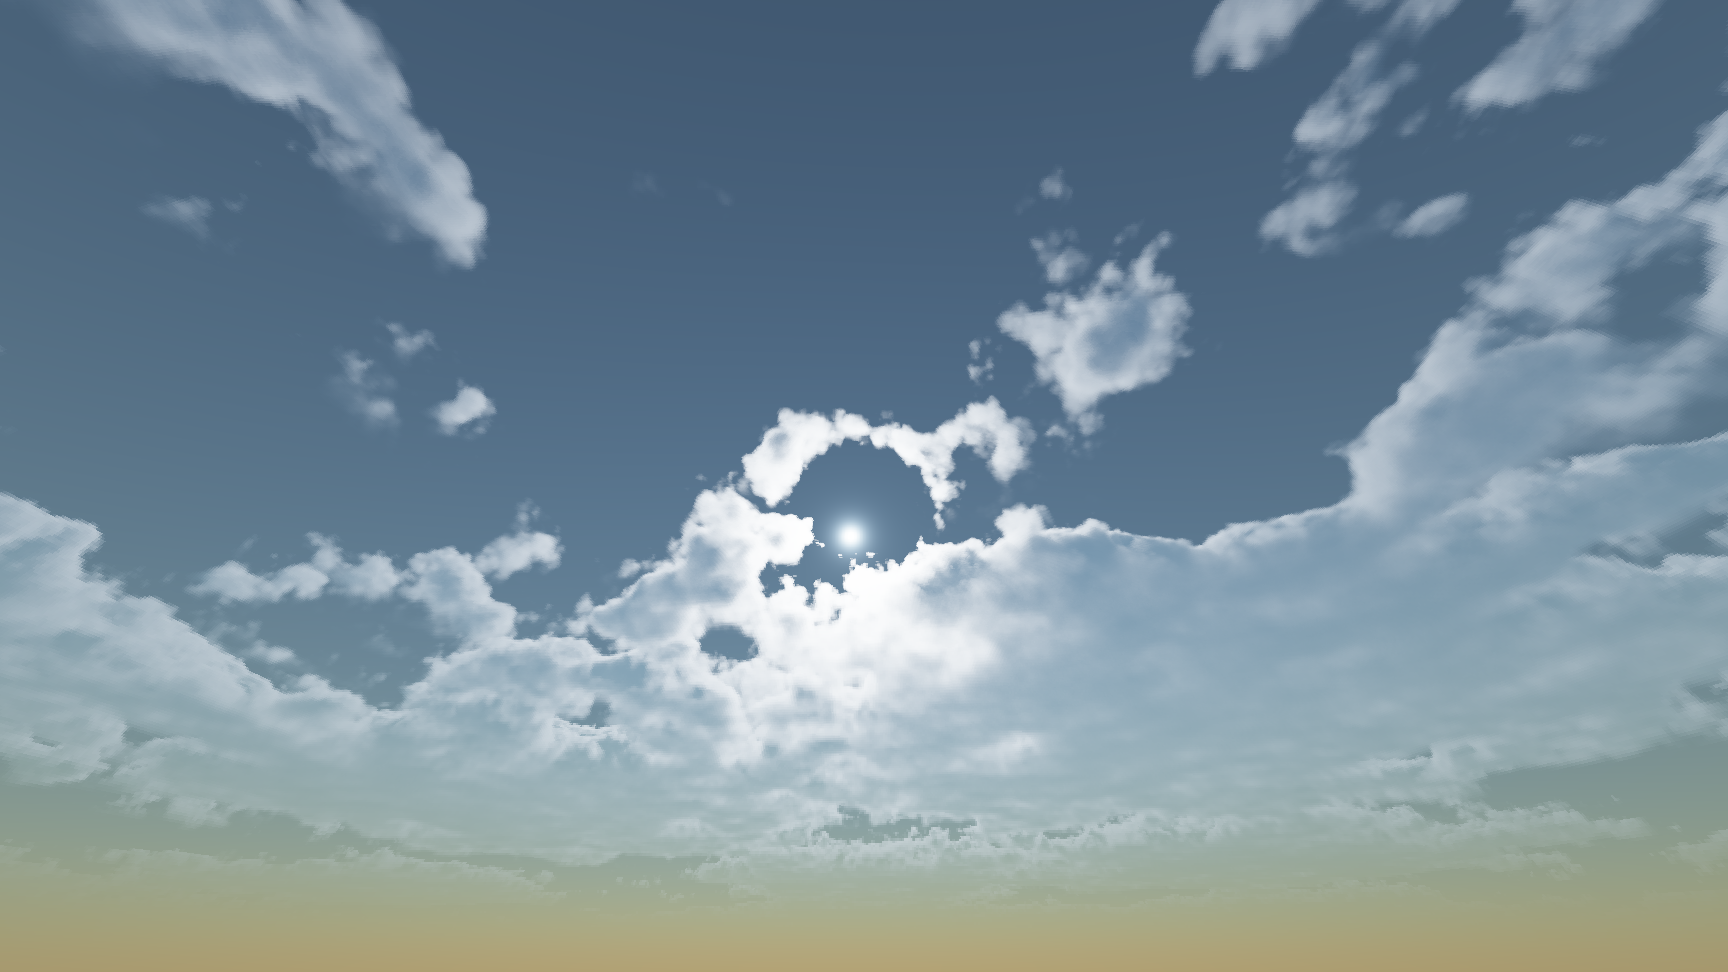 Реализация физически корректных объемных облаков как в игре Horizon Zero Dawn - 1